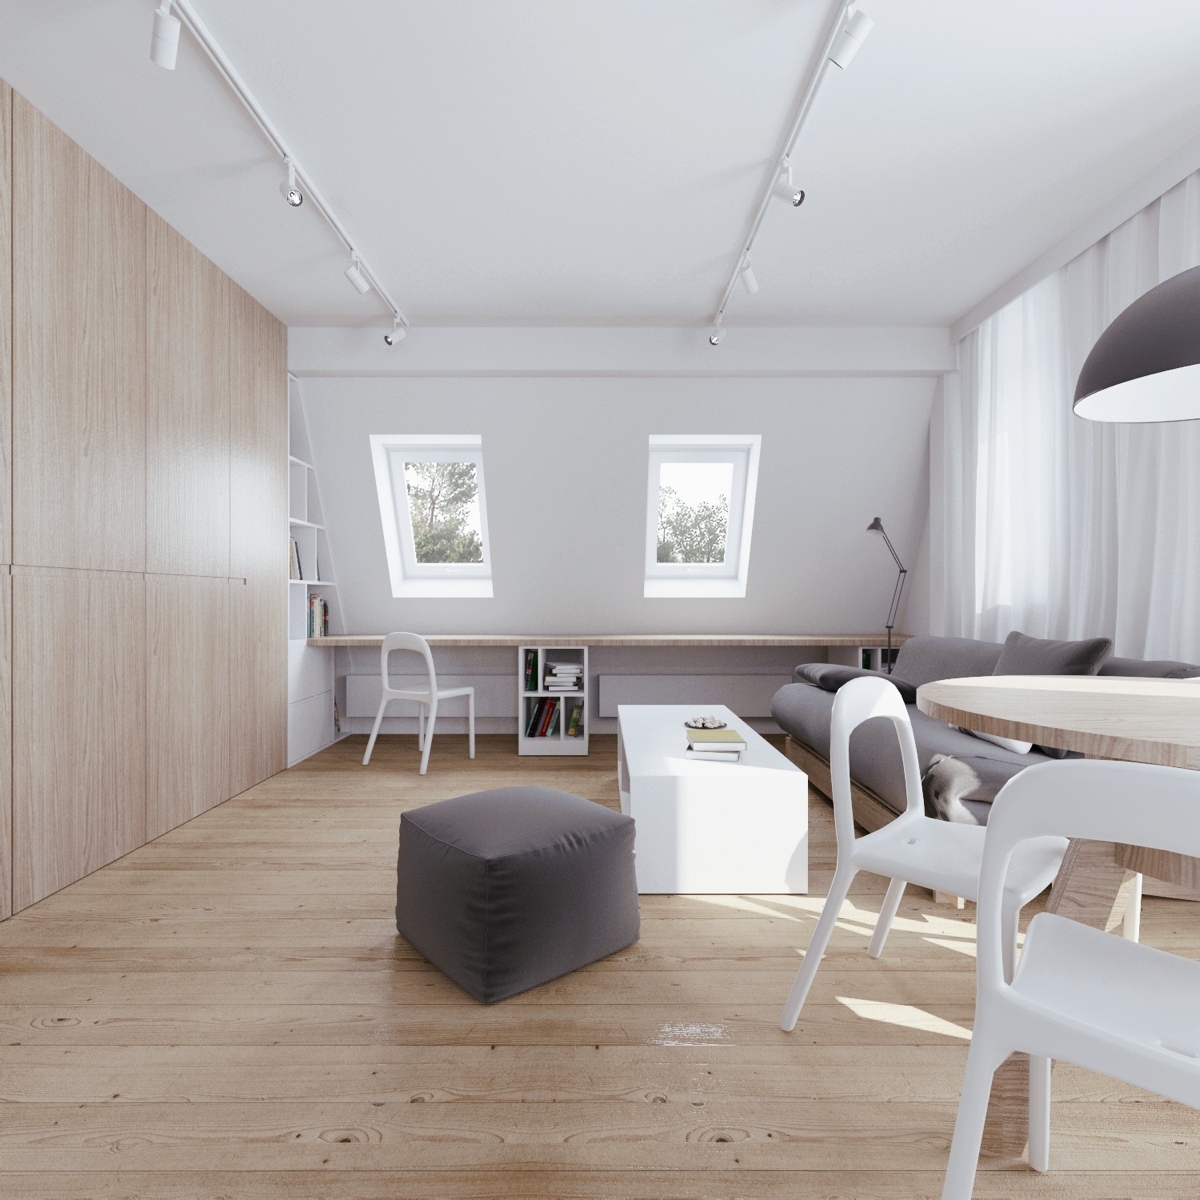 Wedo thiết kế nội thất thông minh cho căn hộ tầng áp mái